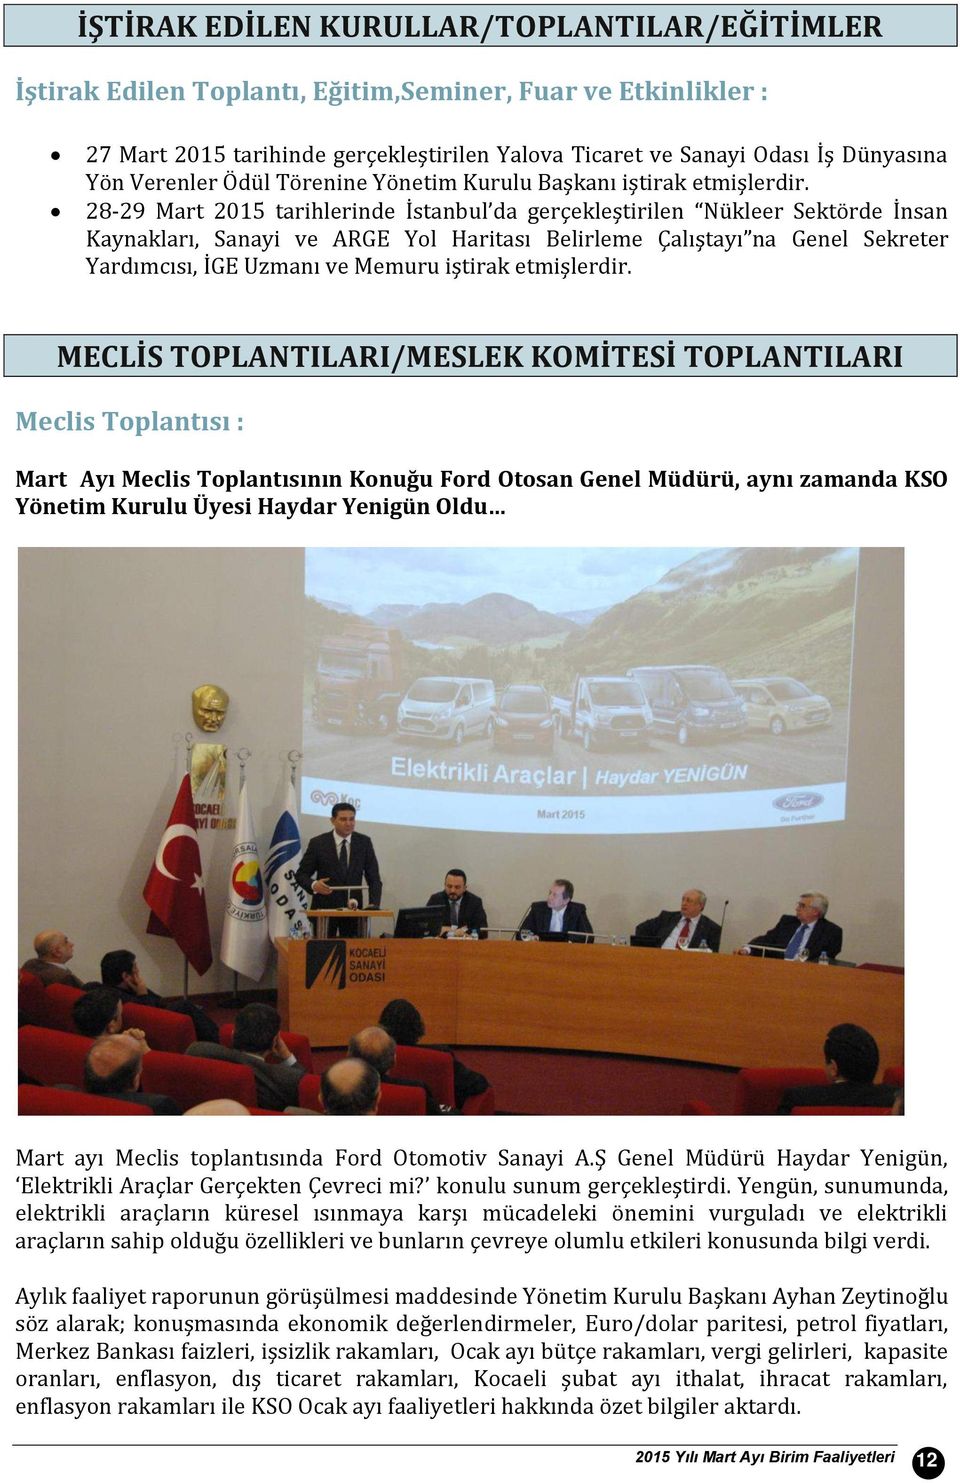 28-29 Mart 2015 tarihlerinde İstanbul da gerçekleştirilen Nükleer Sektörde İnsan Kaynakları, Sanayi ve ARGE Yol Haritası Belirleme Çalıştayı na Genel Sekreter Yardımcısı, İGE Uzmanı ve Memuru iştirak